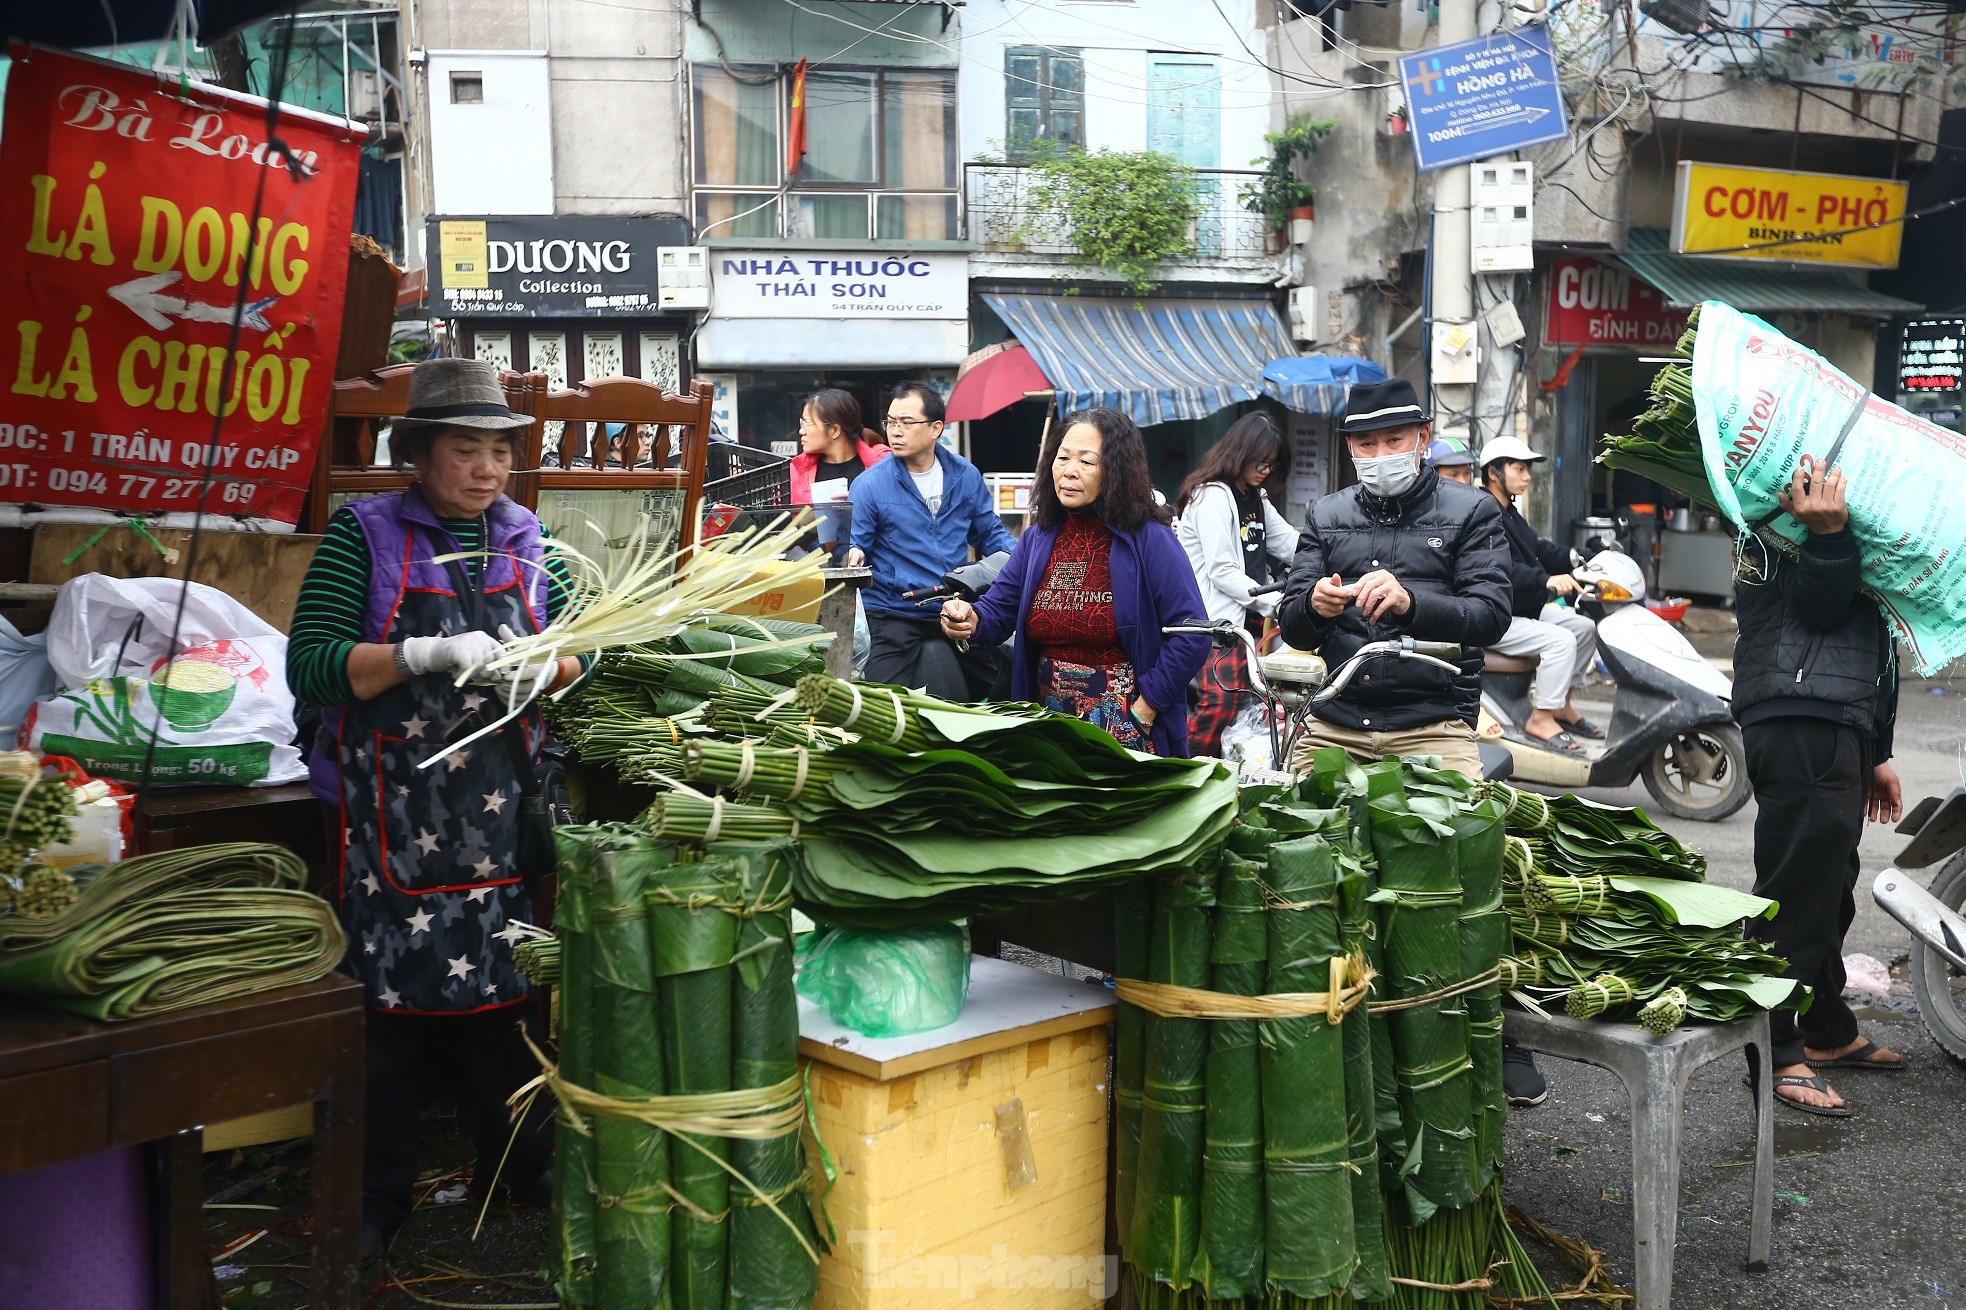 Chợ lá dong lâu đời nhất Hà Nội: Ngày bán hàng vạn lá, thu về hàng chục triệu - Ảnh 17.